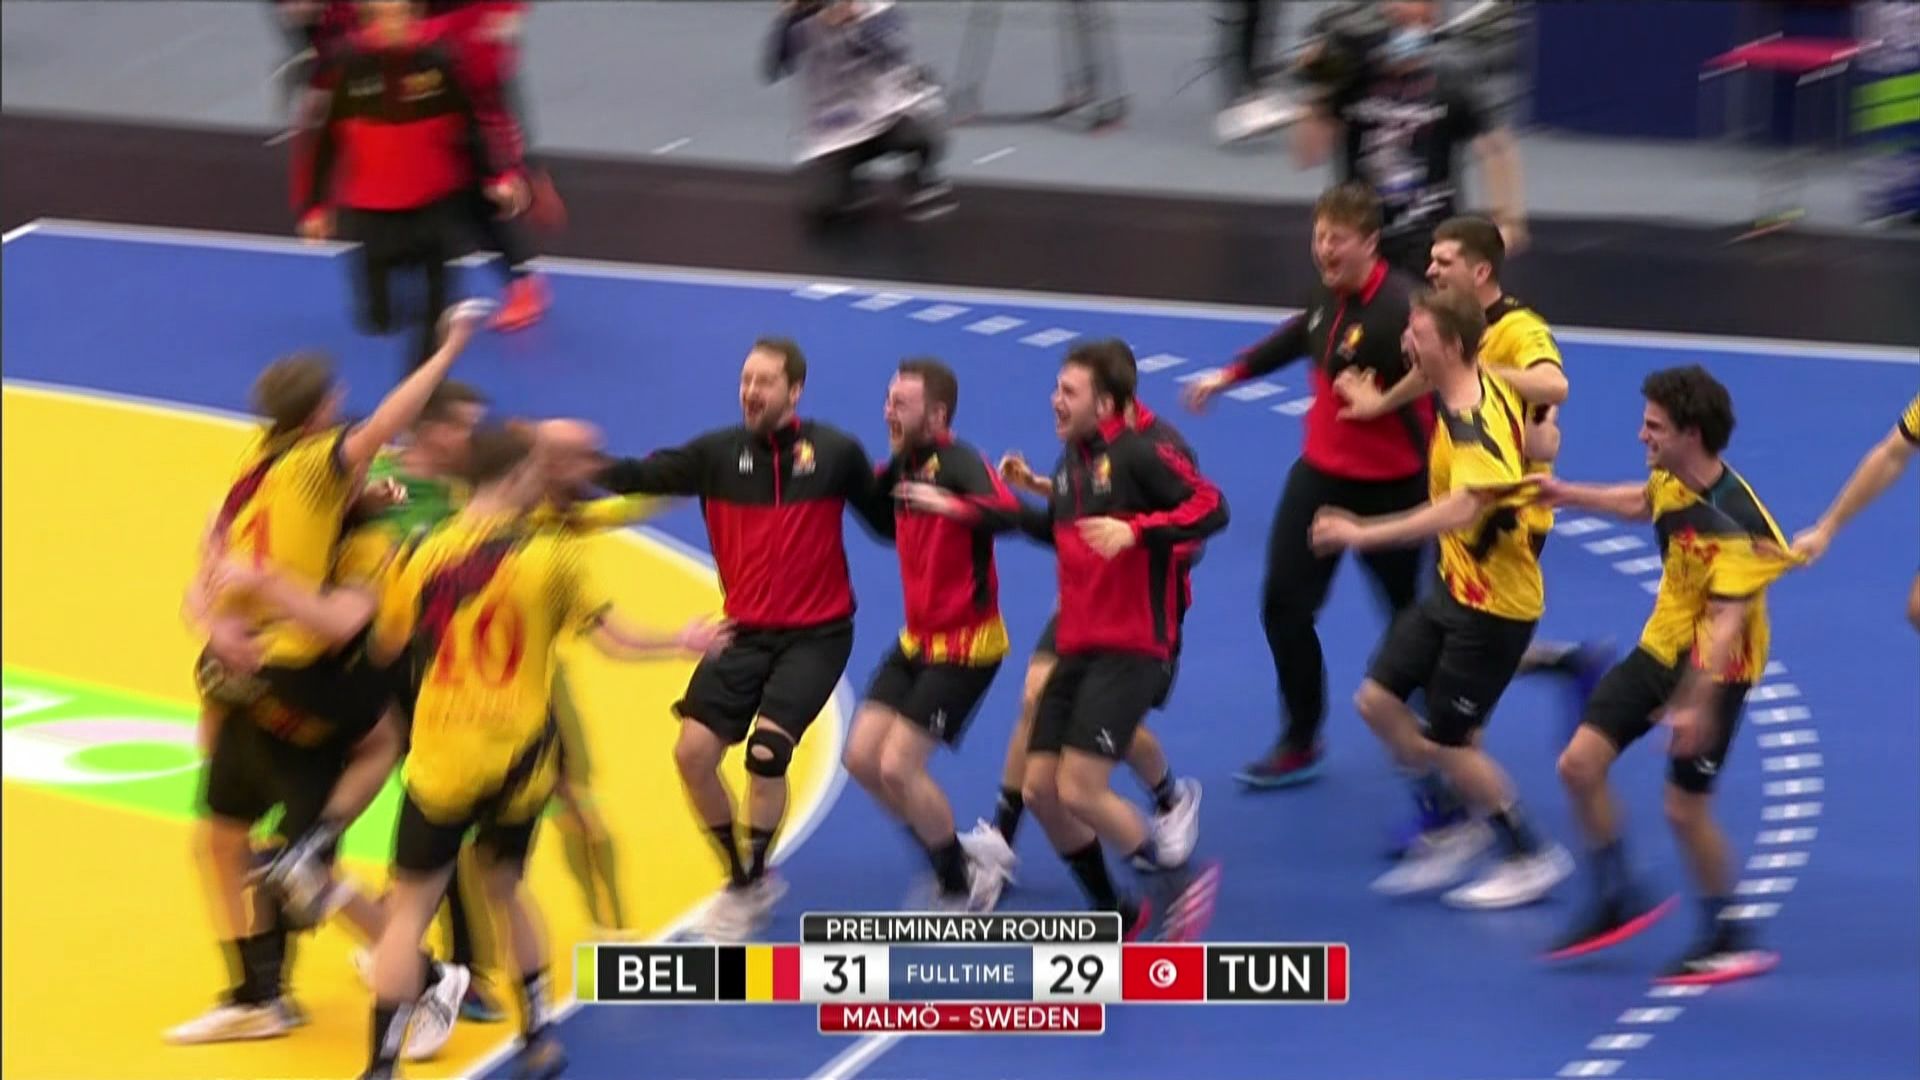 Il Belgio ha ottenuto la prima vittoria nella sua storia ai Mondiali di pallamano contro la Tunisia